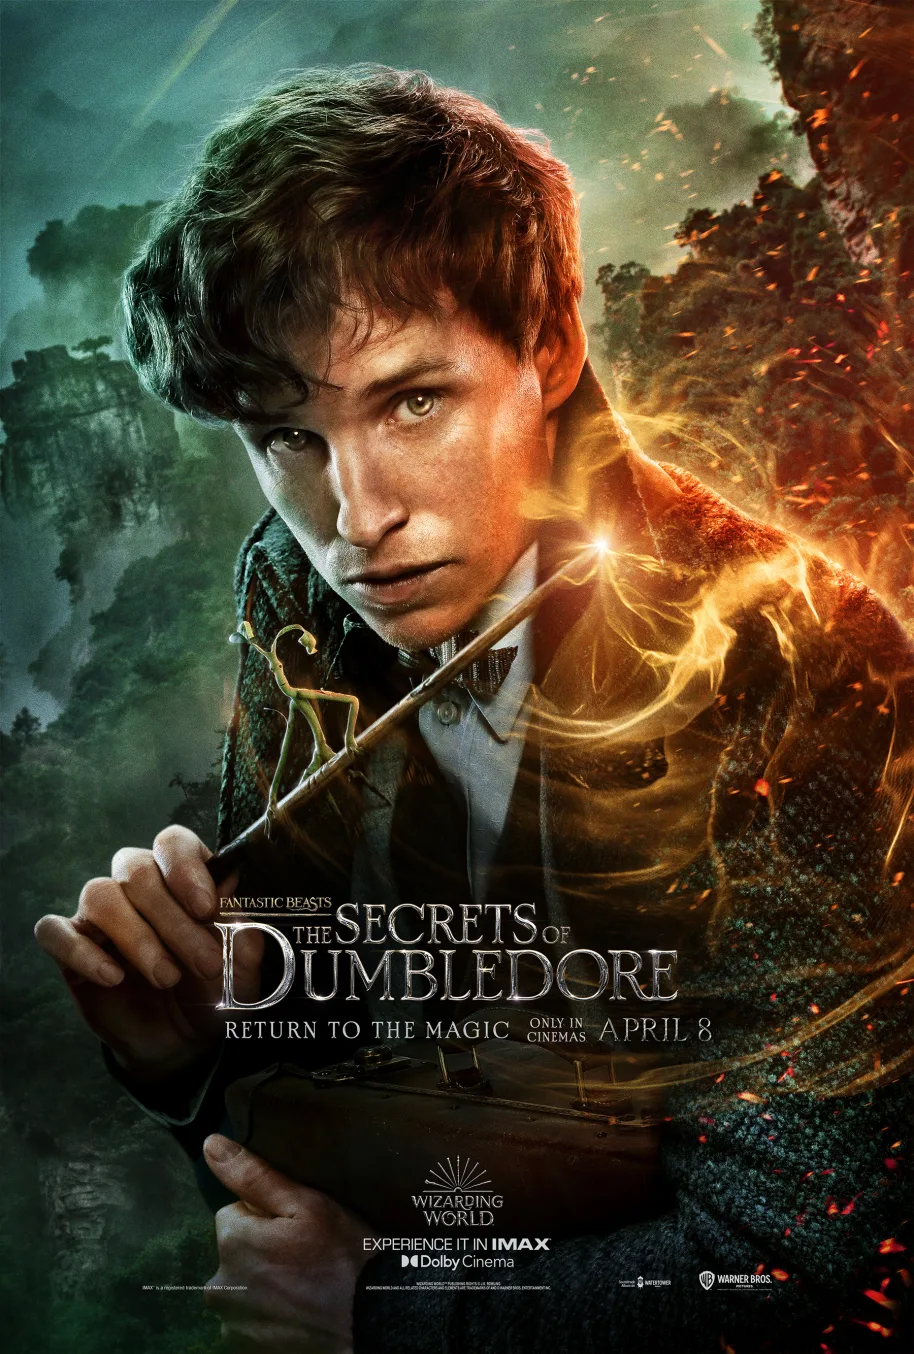 “Fantastic Beasts: The Secrets of Dumbledore”: Newt Scamander character poster